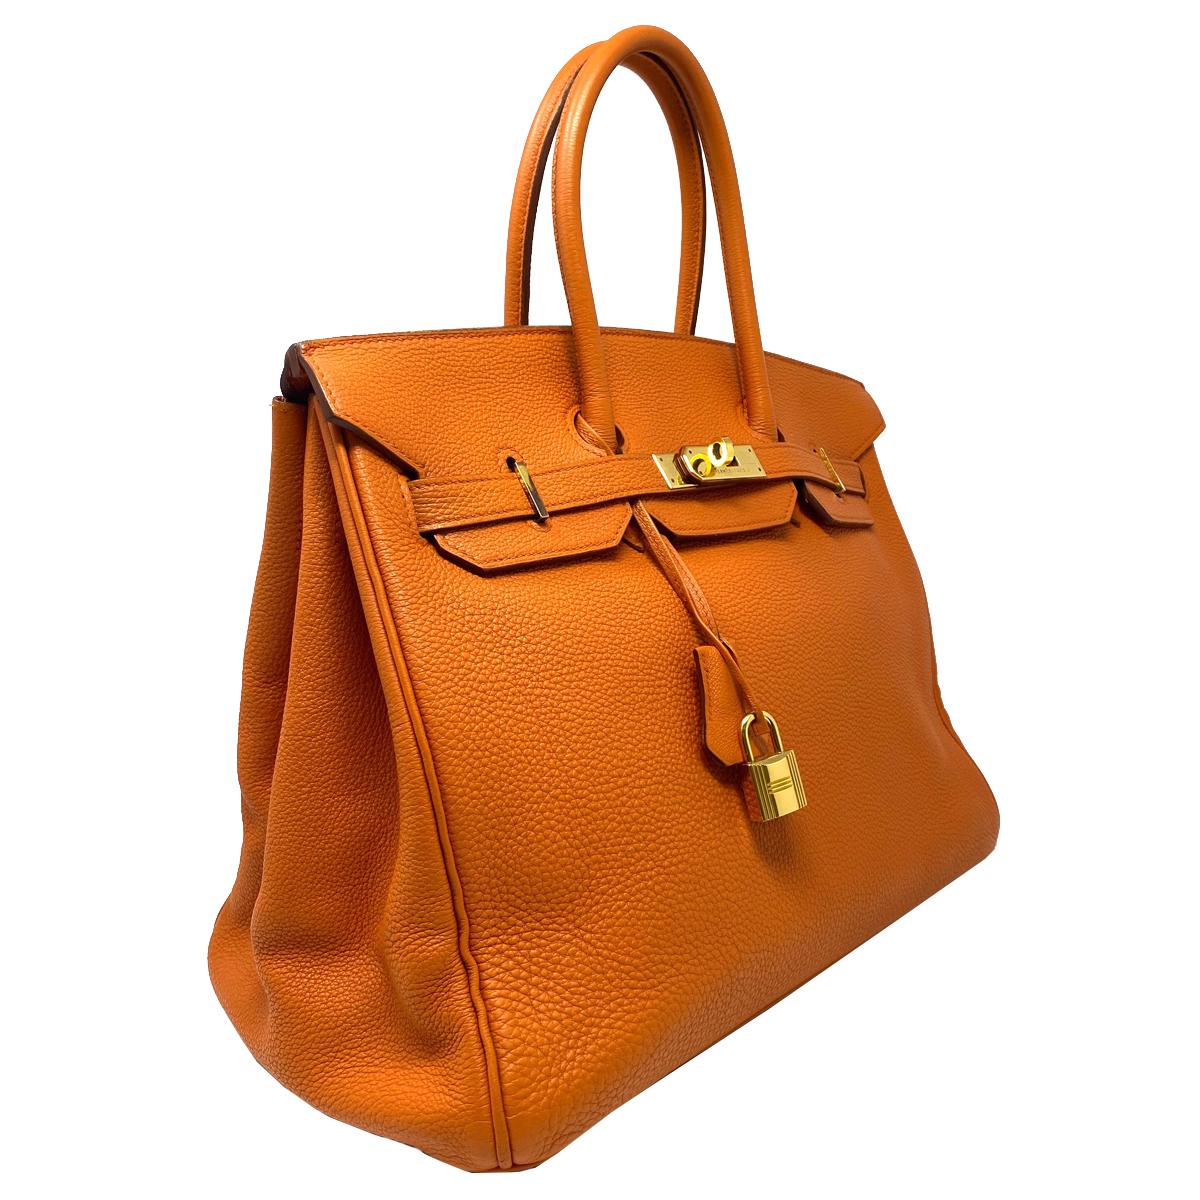 Company-Hermes 
Model-Hermes Birkin 35 Bag Togo Orange Leather GHW Top Handle Handbag 
Color-Orange 
Date Code-RF13
Material-Orange Togo Leather 
Measurements-14